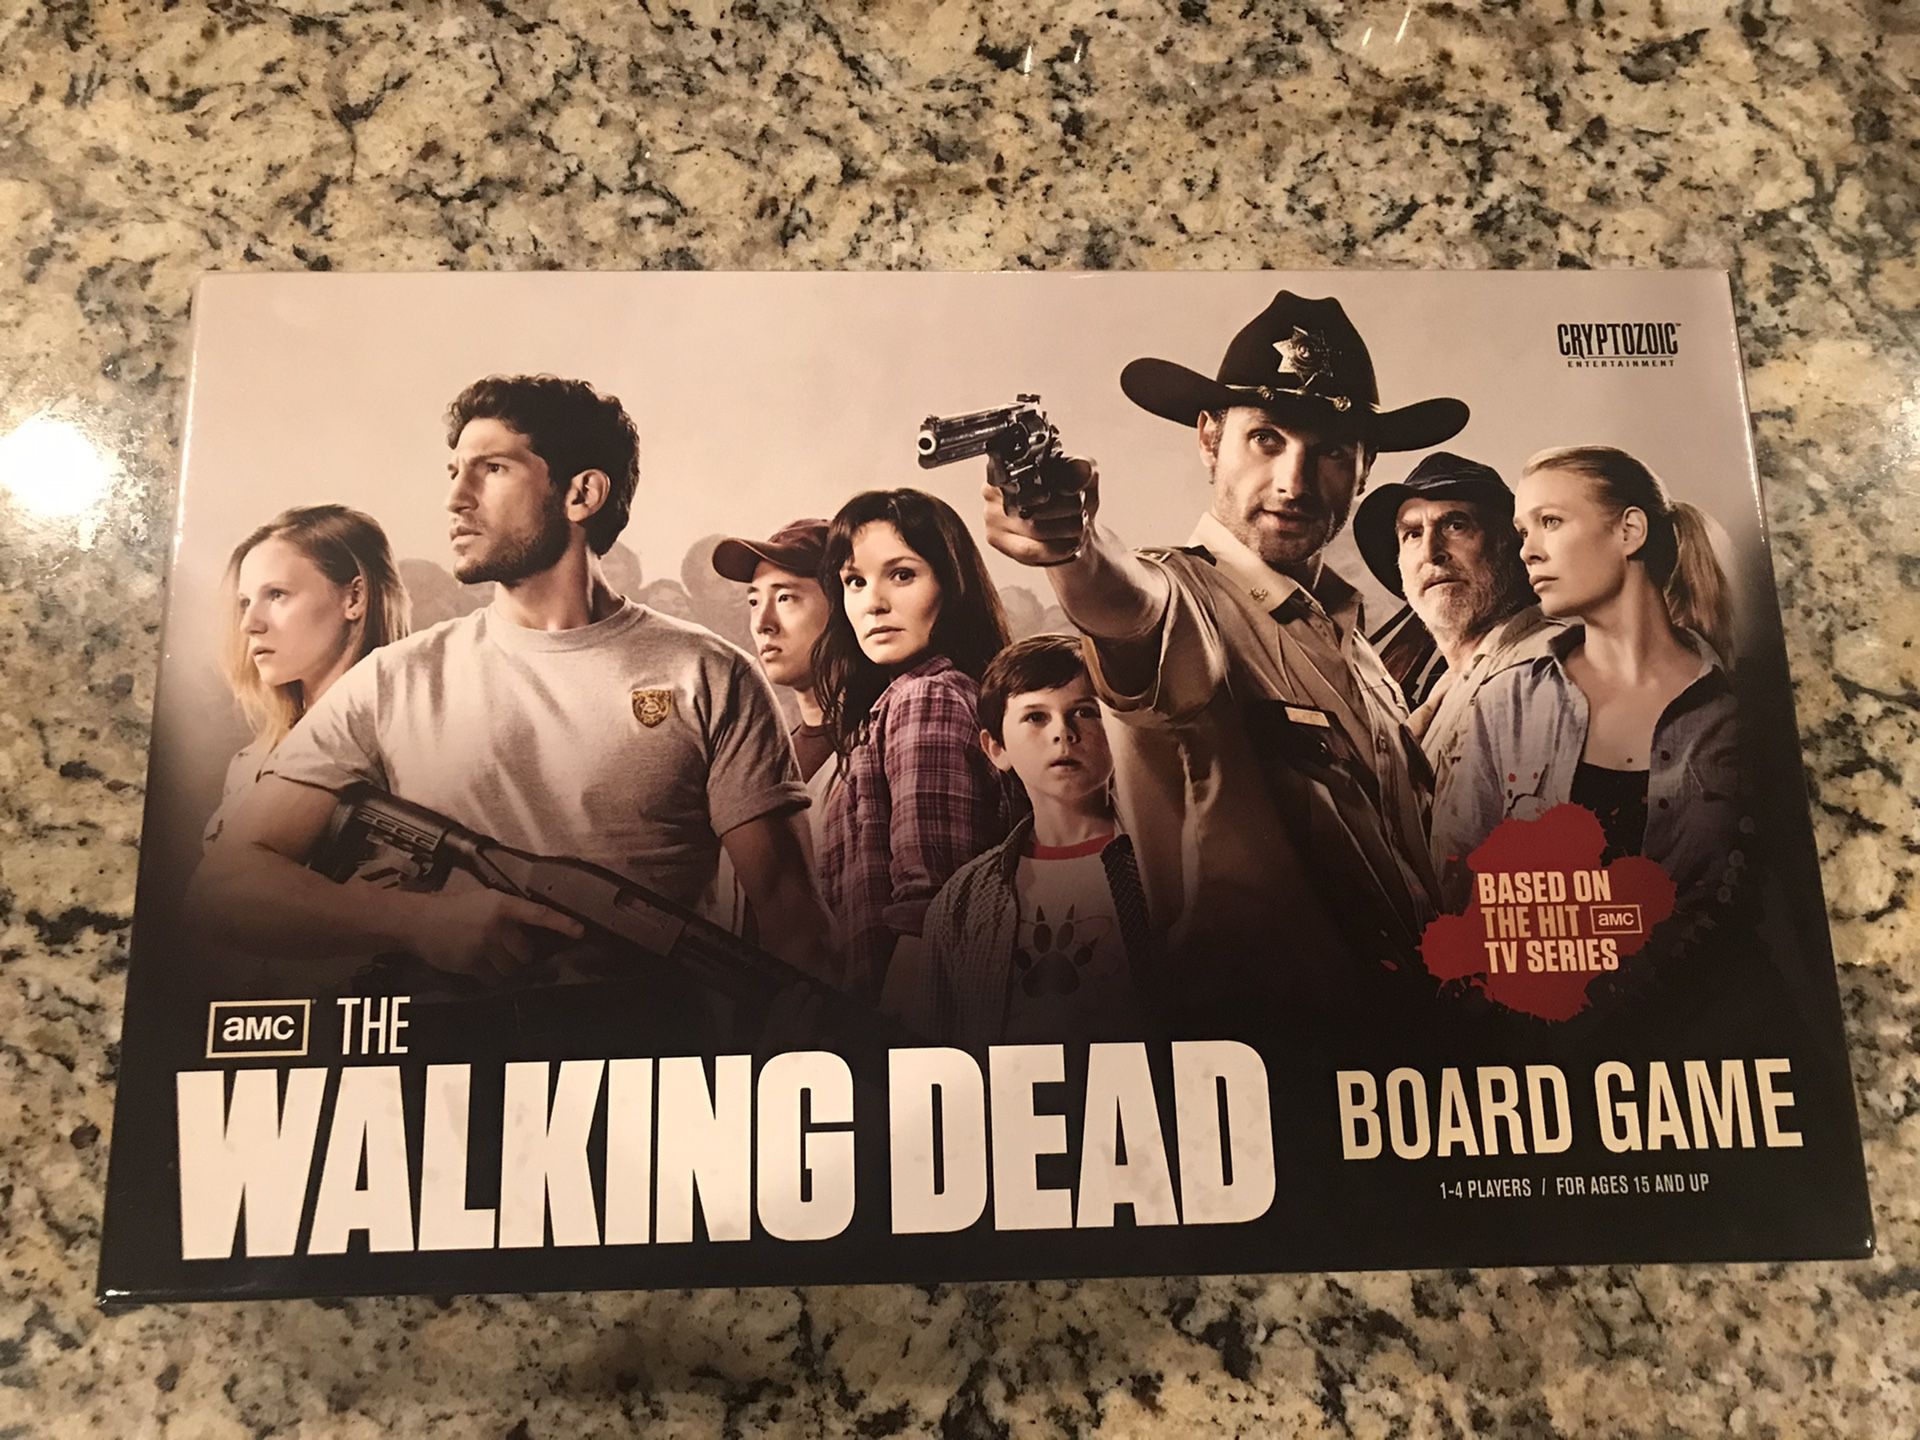 Walking dead board game